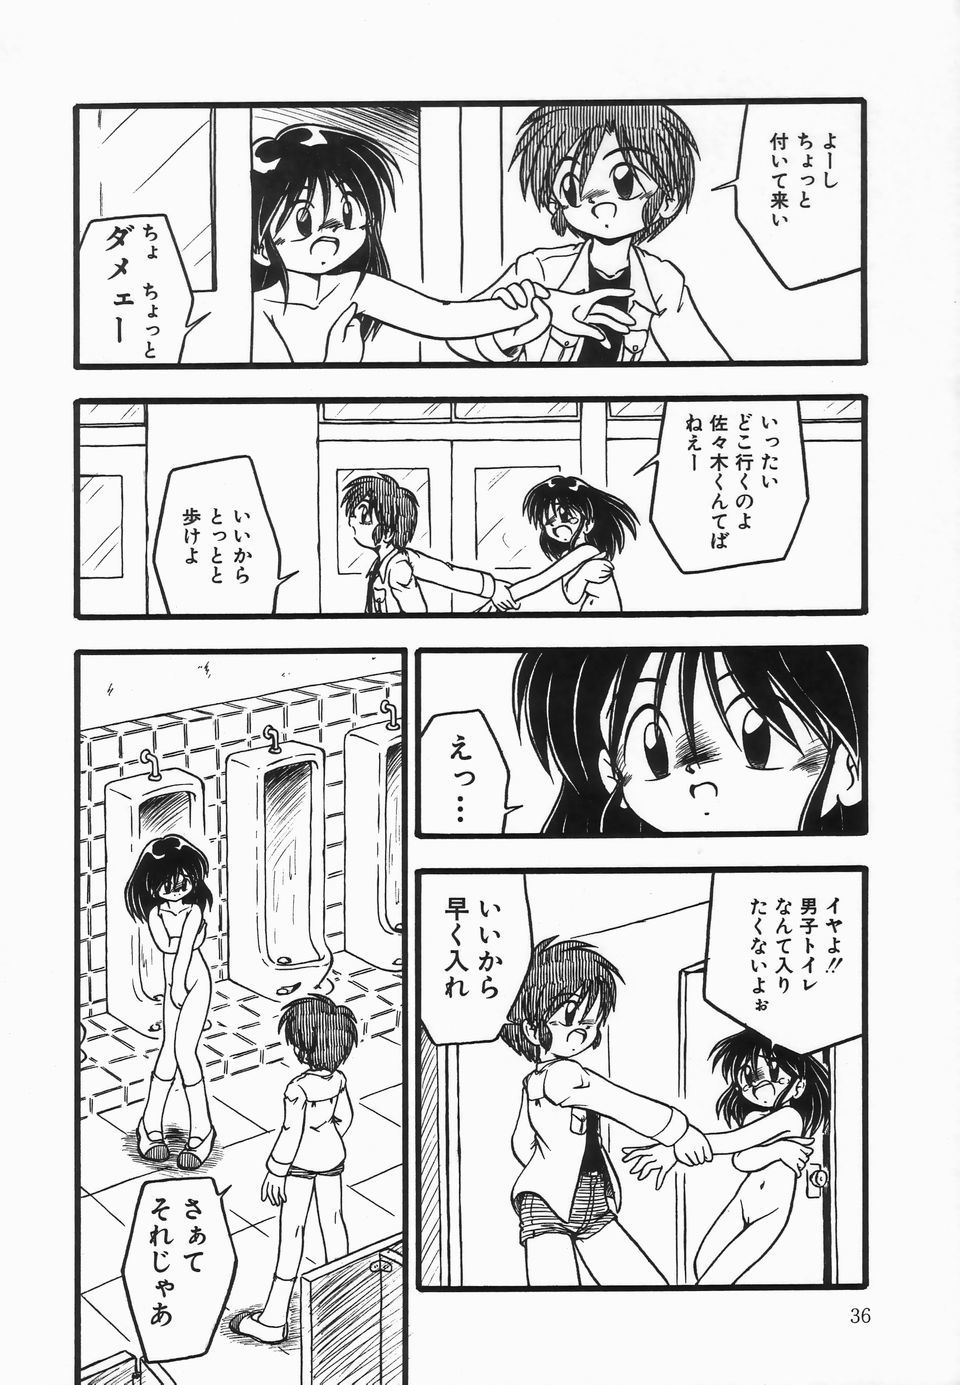 [DASH] Kanchou Shoujo - Enema Girl page 40 full